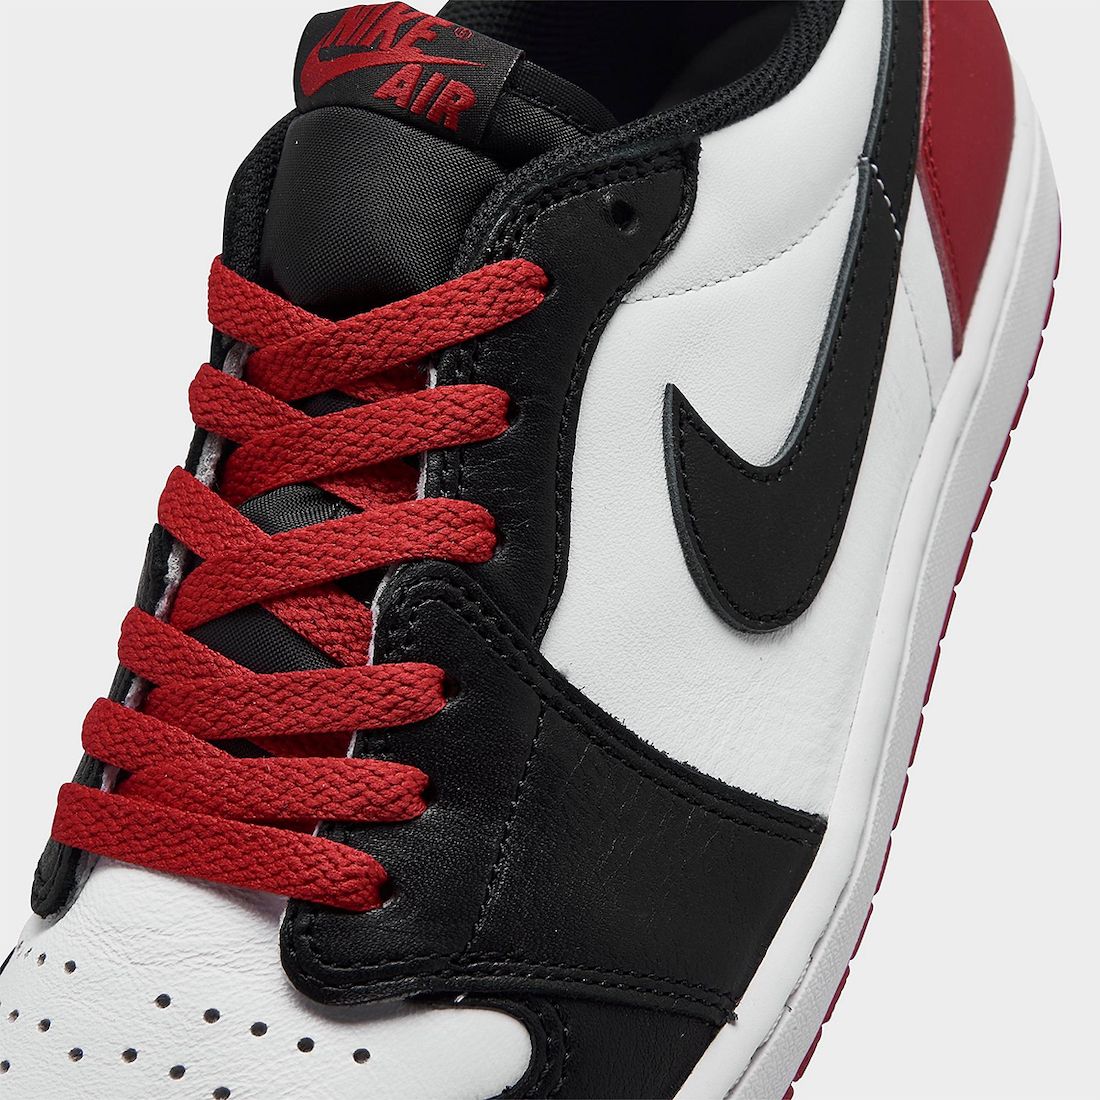 Where to Buy the Air Jordan 1 Low OG ‘Black Toe’ - Sneaker Freaker